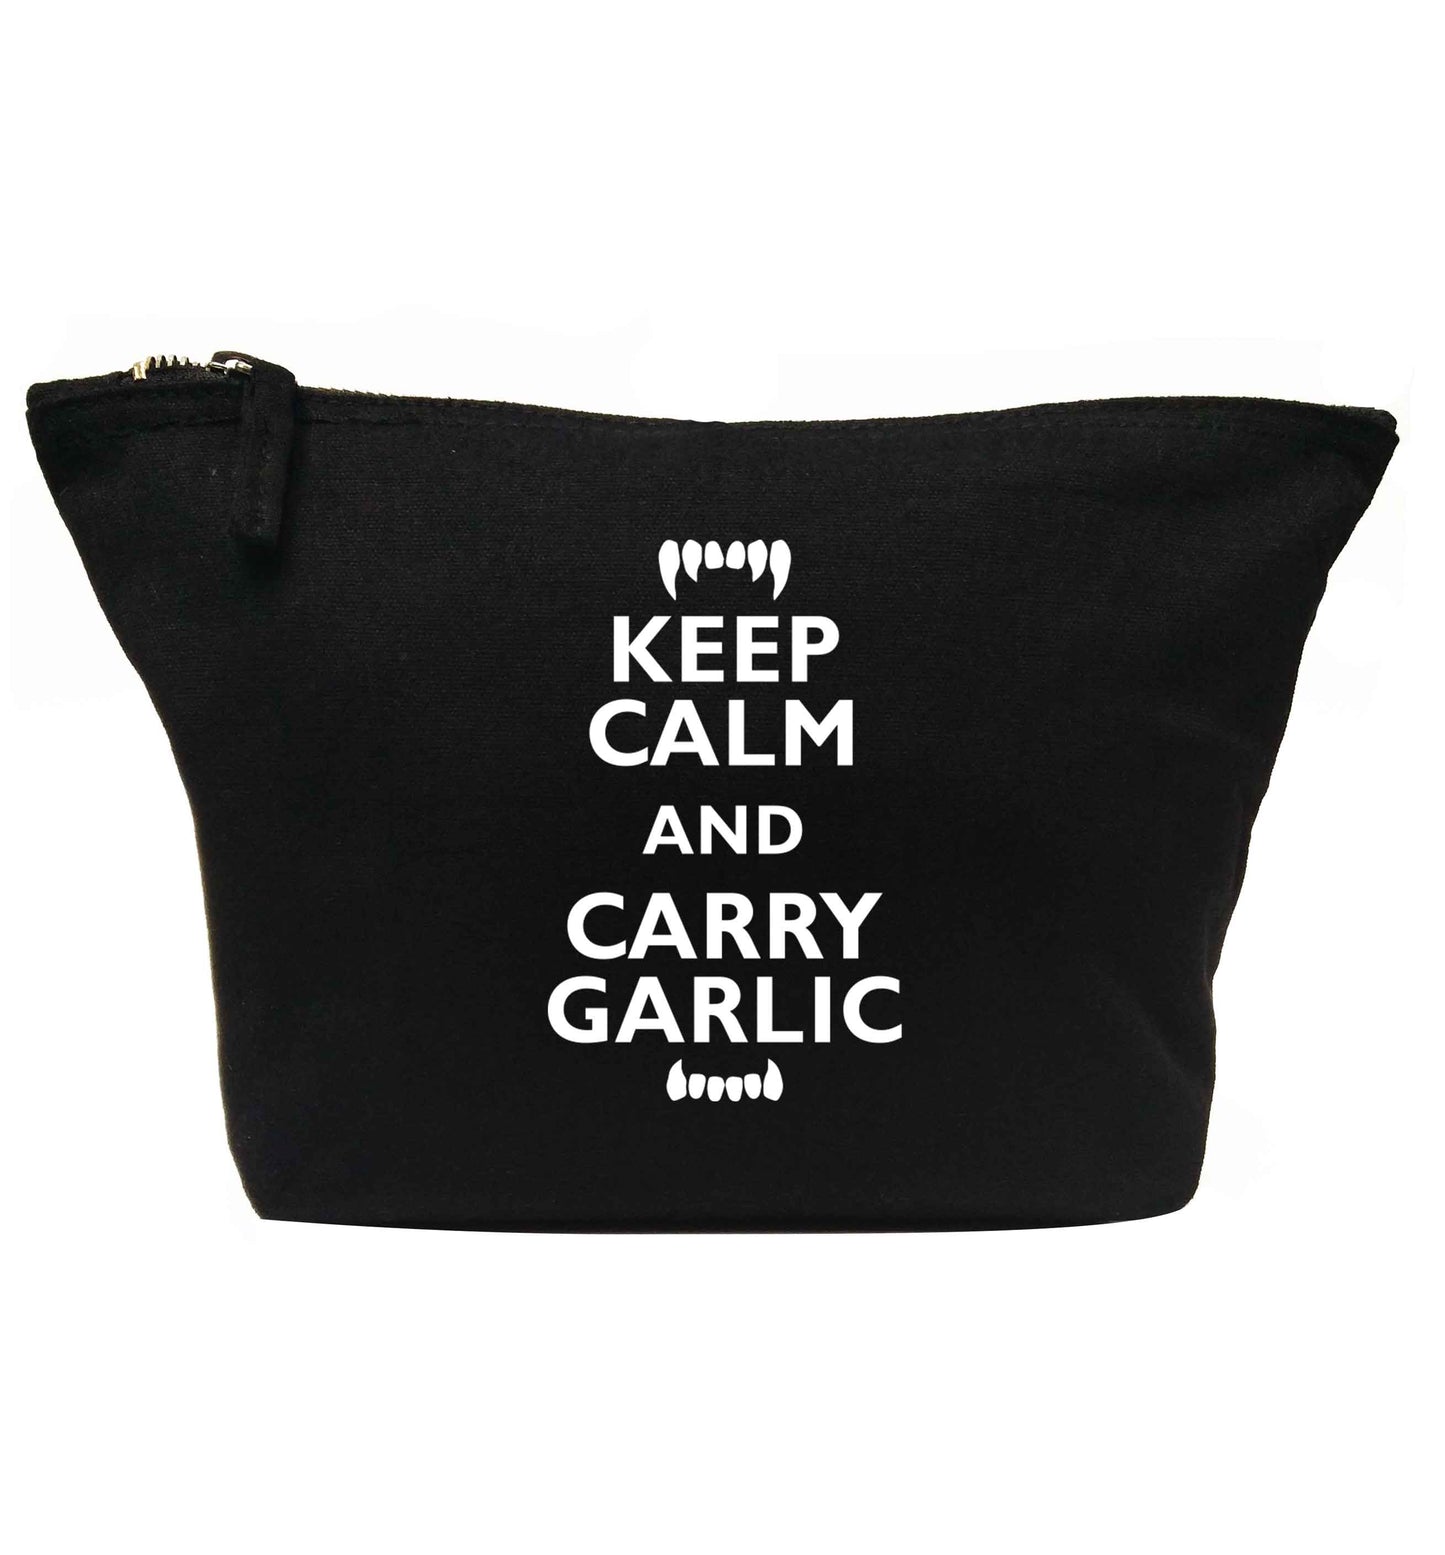 Keep calm and carry garlic | Makeup / wash bag